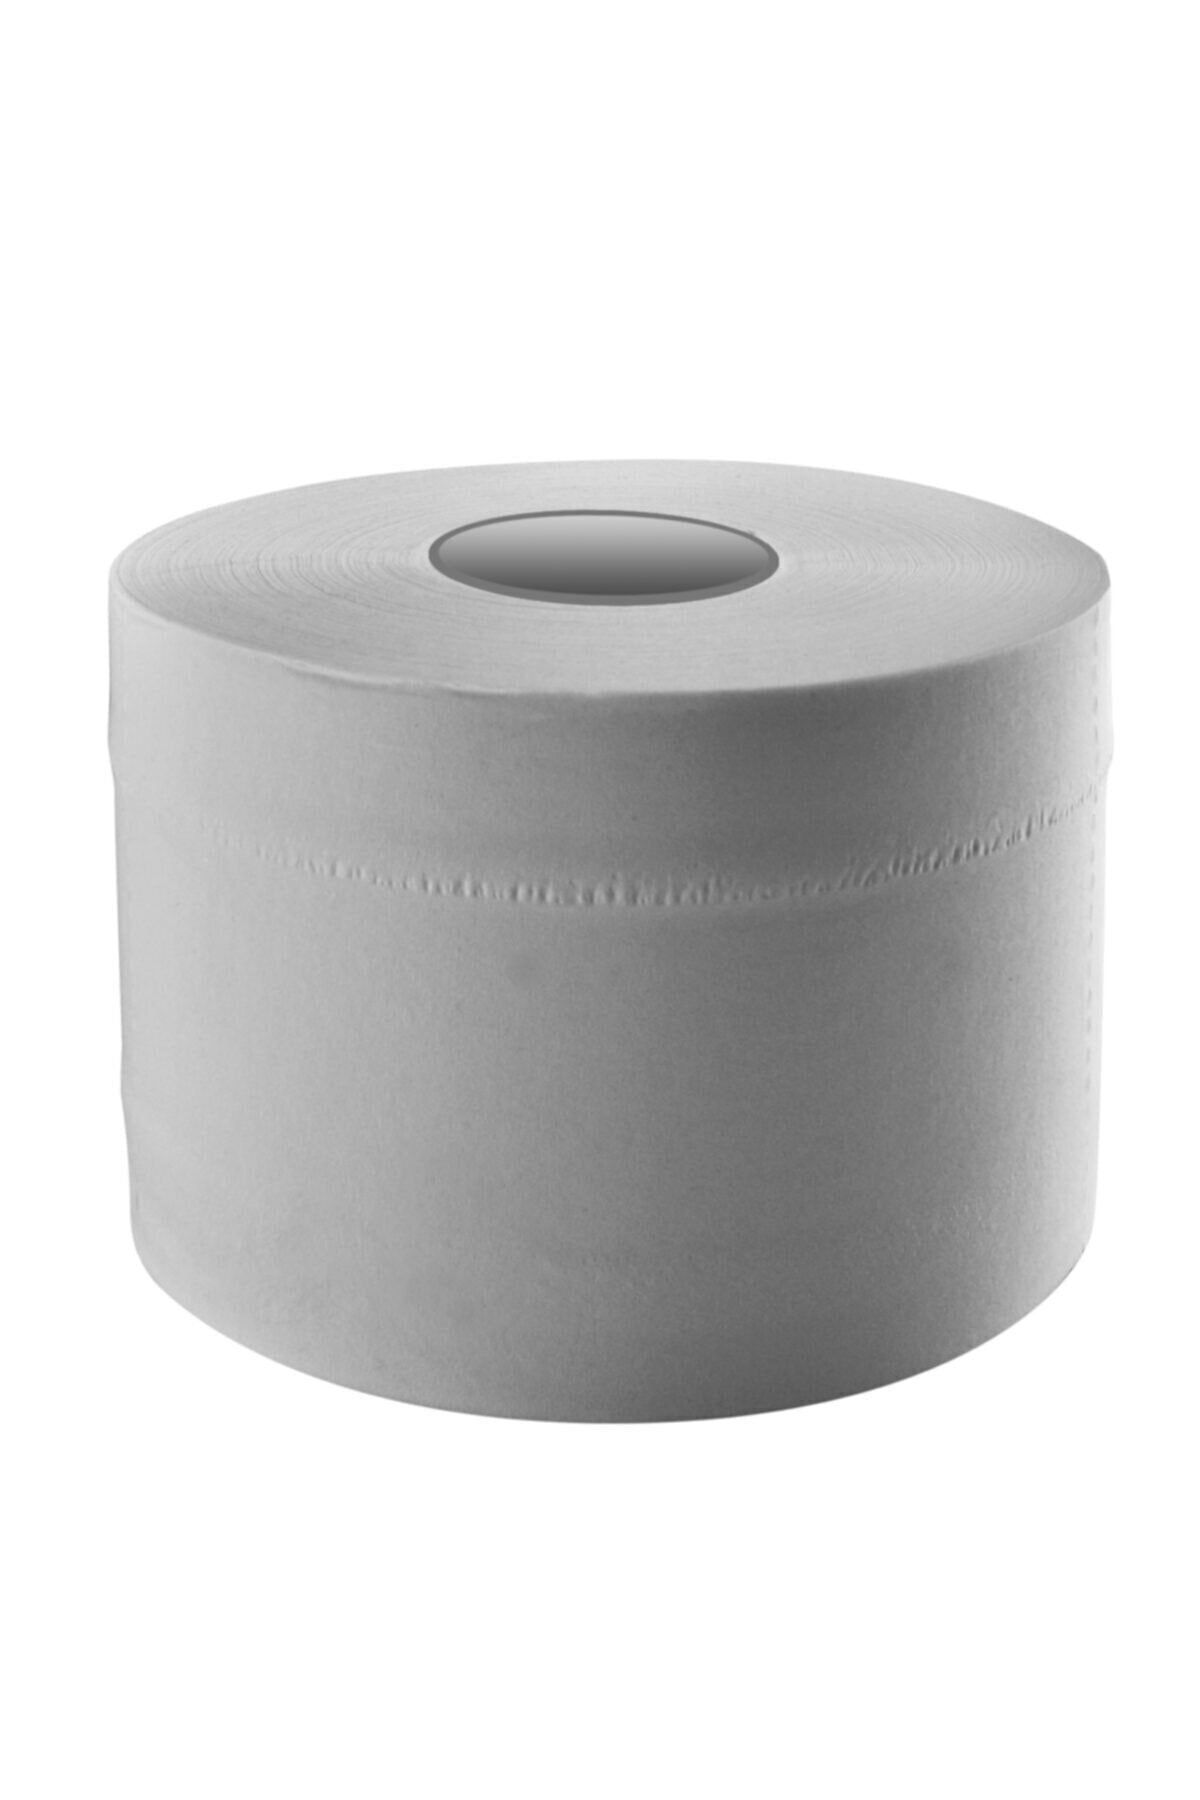 ARI Mini Içten Çekme Tuvalet Kağıdı 4 Kg 12 Rulo